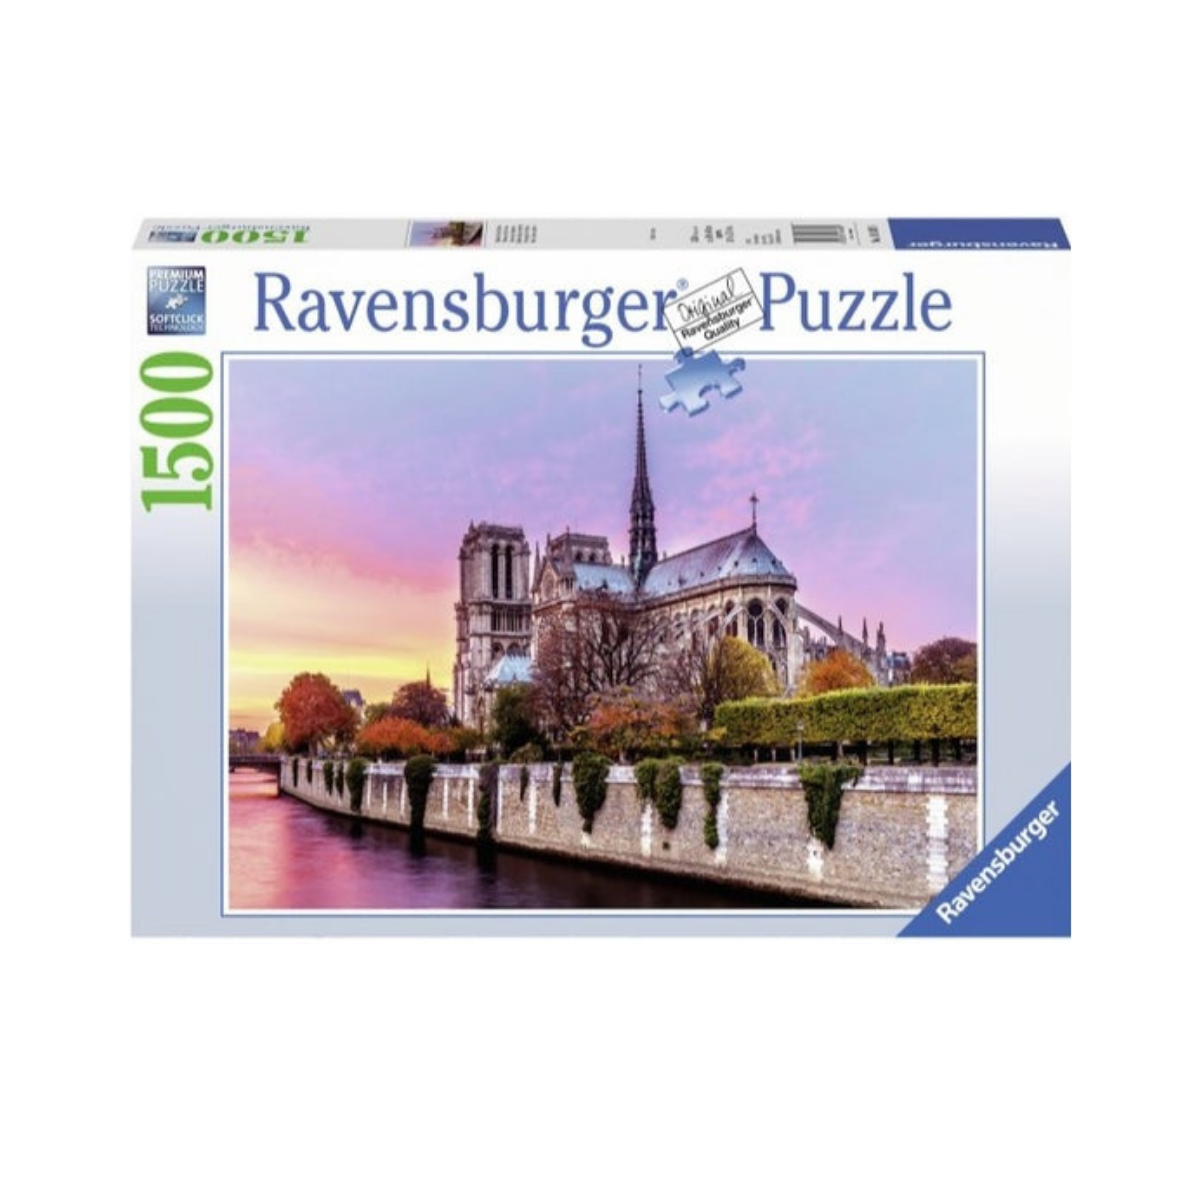 Xếp hình puzzle Picturesque Notre Dame 1500 mảnh RAVENSBURGER 163458